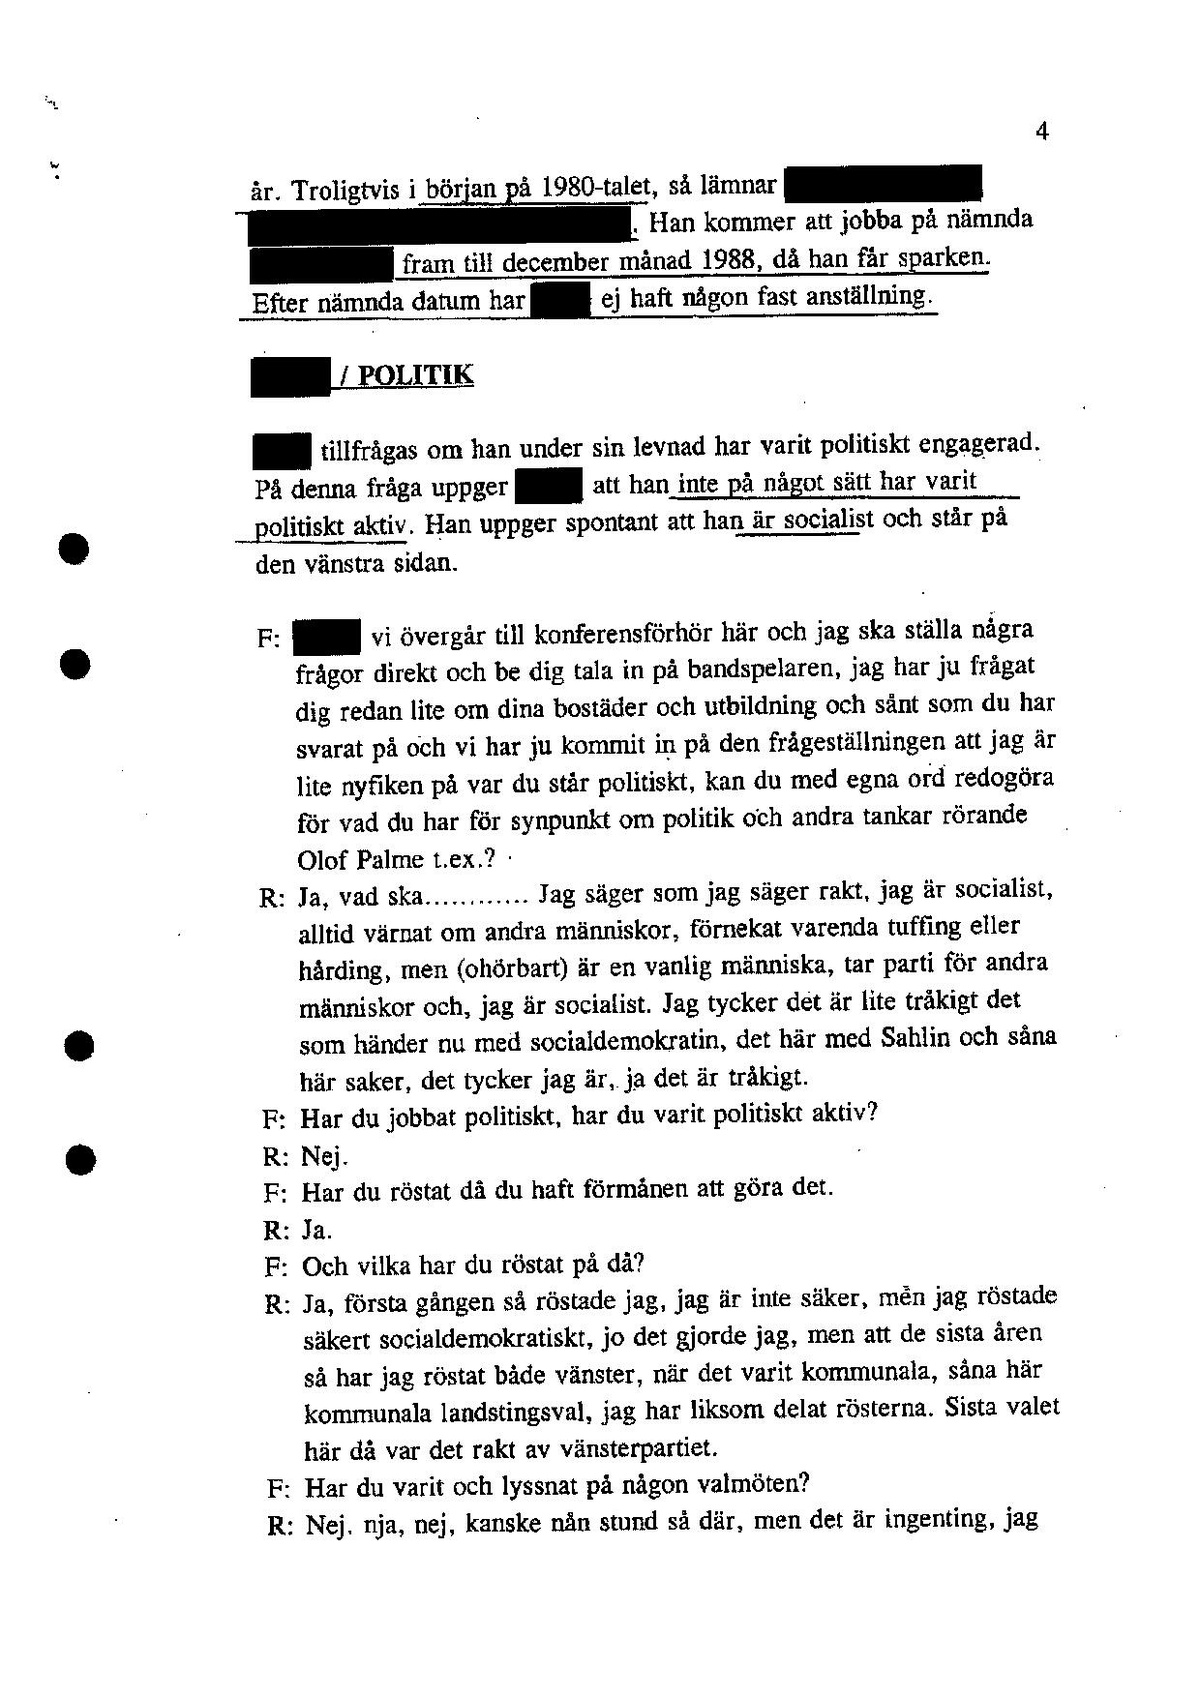 Pol-1995-10-27 D17242-01 Förhör-okand-person.pdf